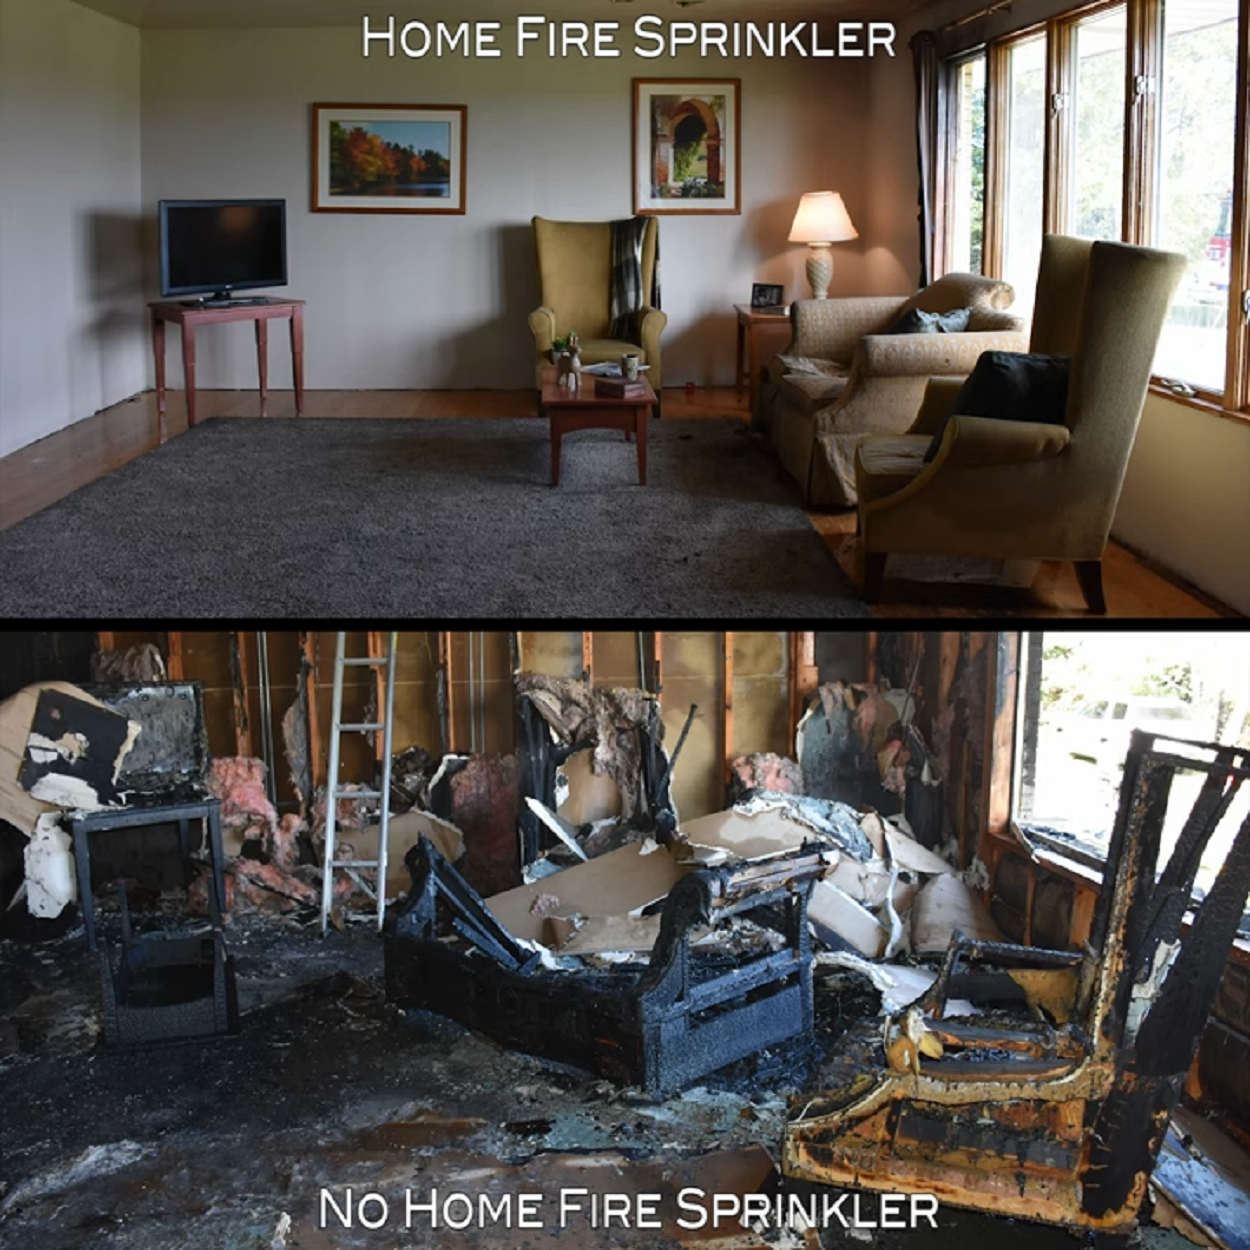 Votre maison présente-t-elle un défaut fatal ?  Alarme face à l’augmentation des décès dus aux incendies aux États-Unis